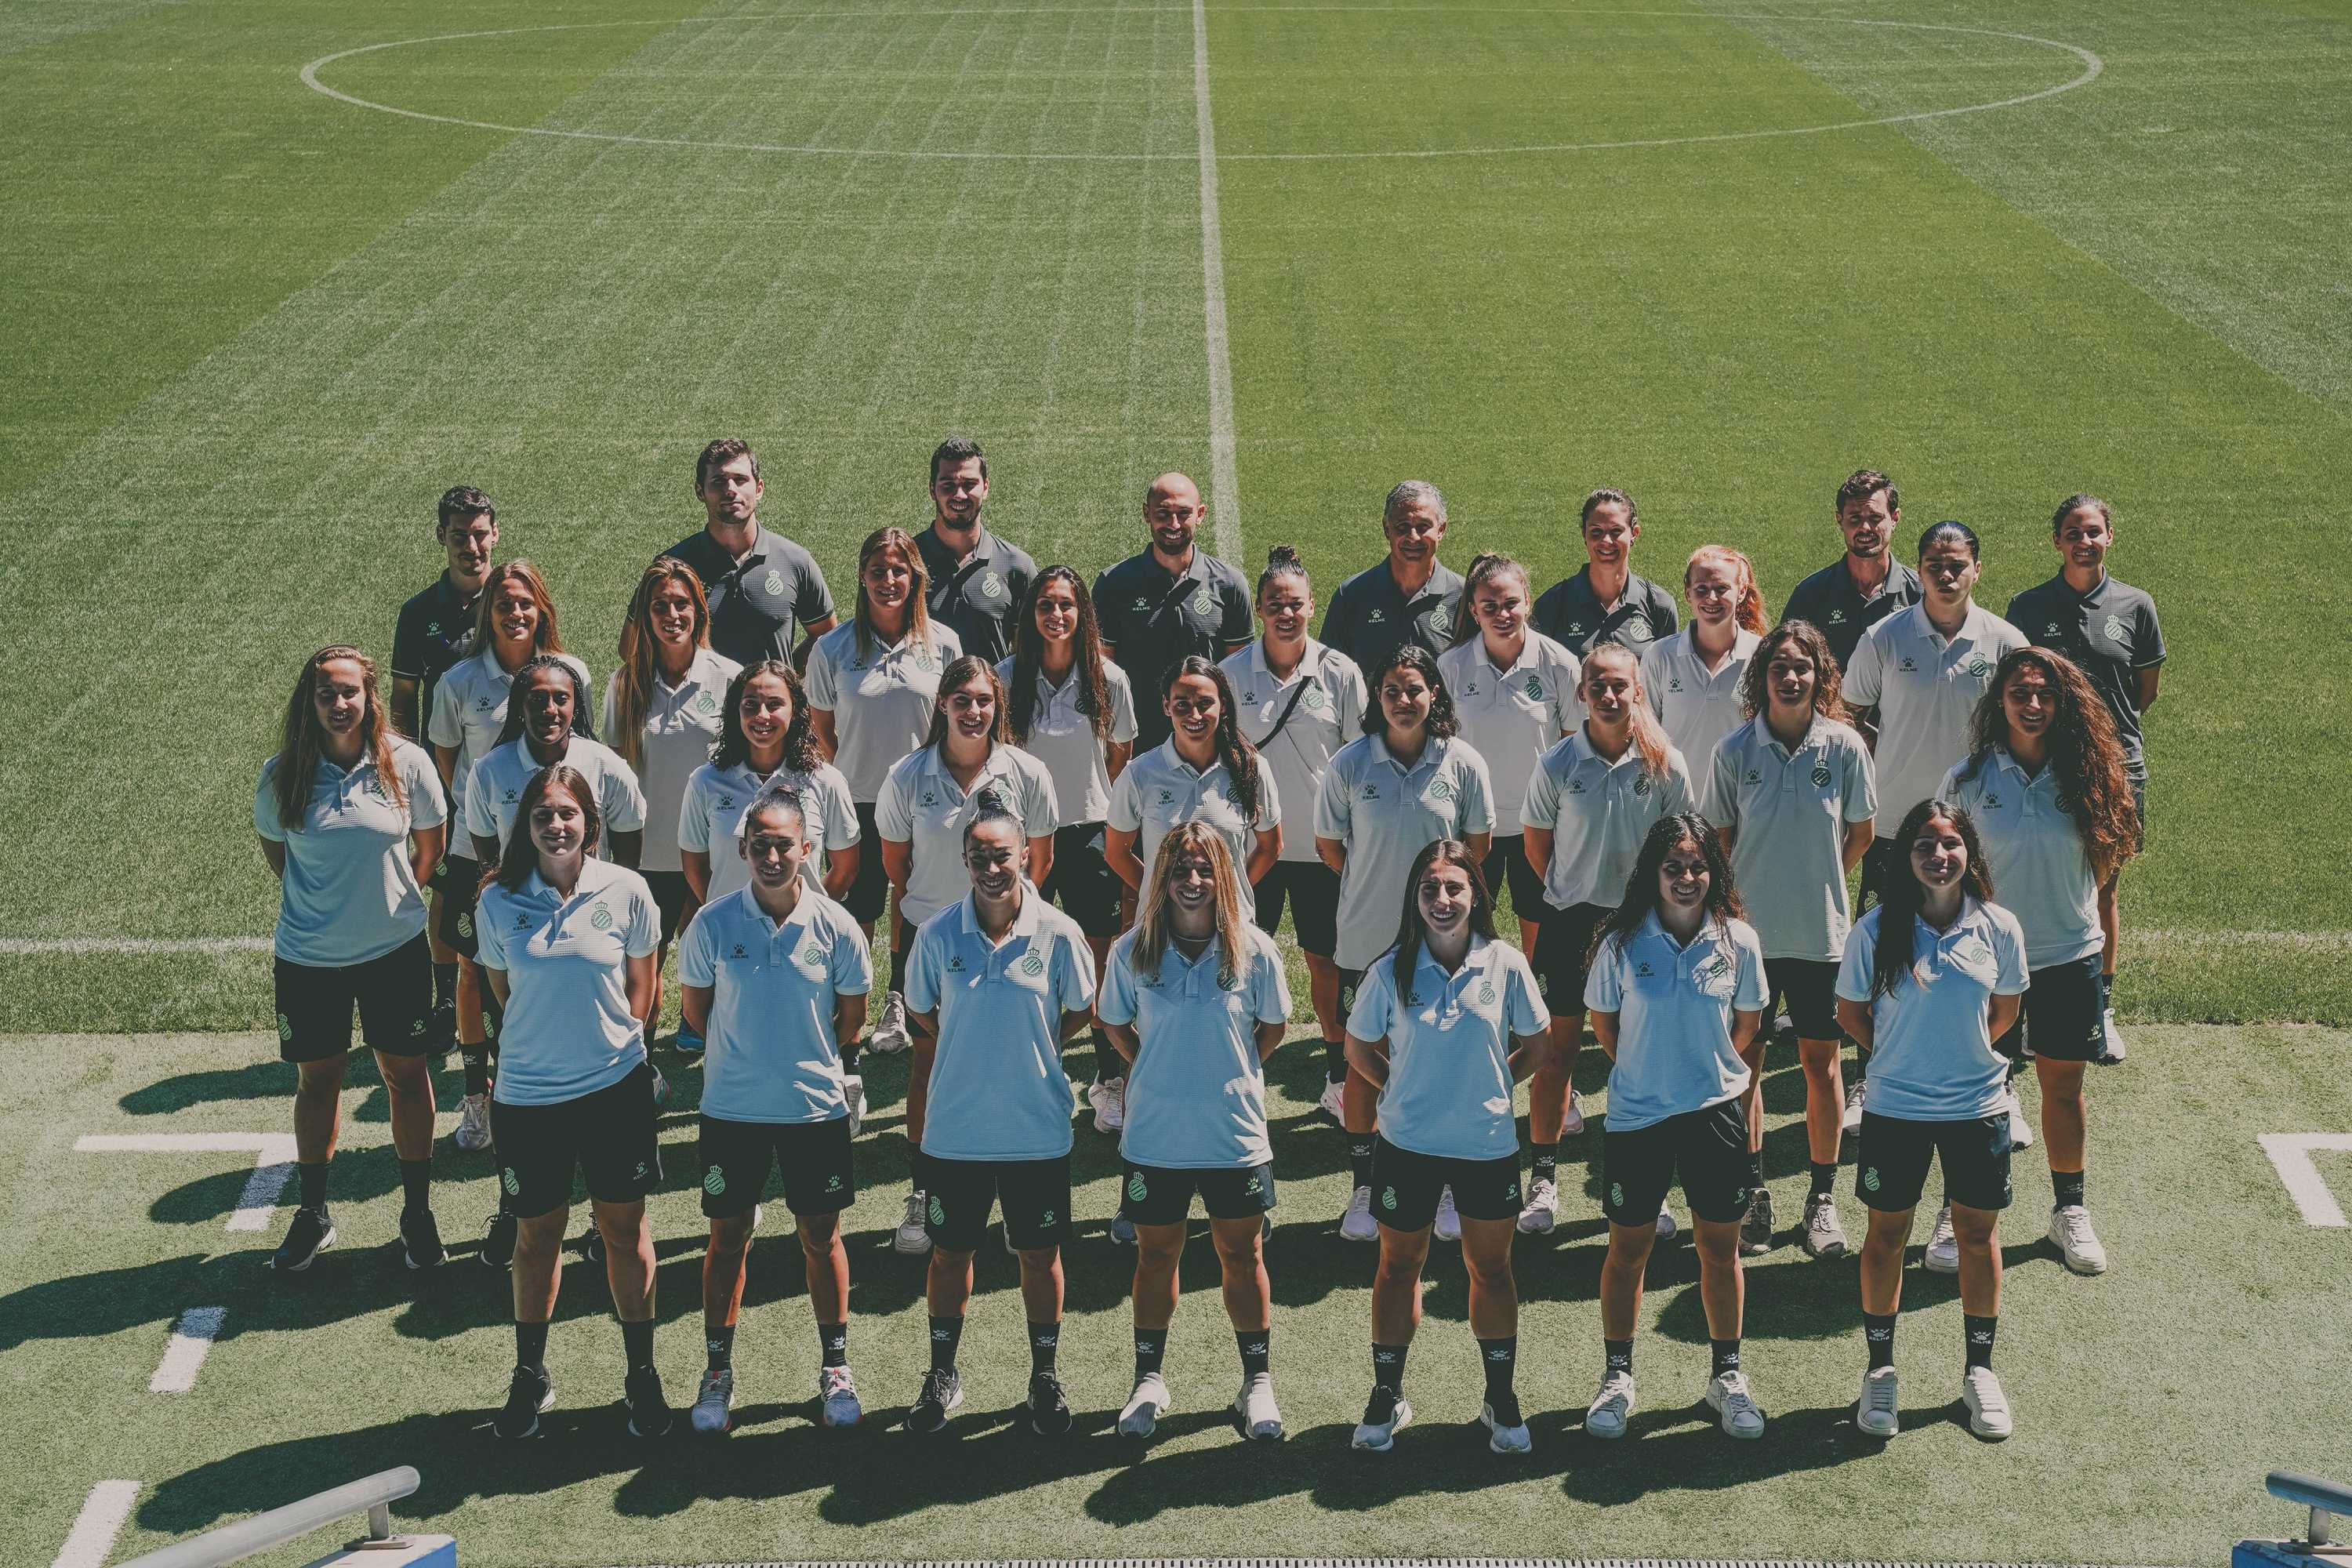 L'Espanyol Femení coneix la història del Club